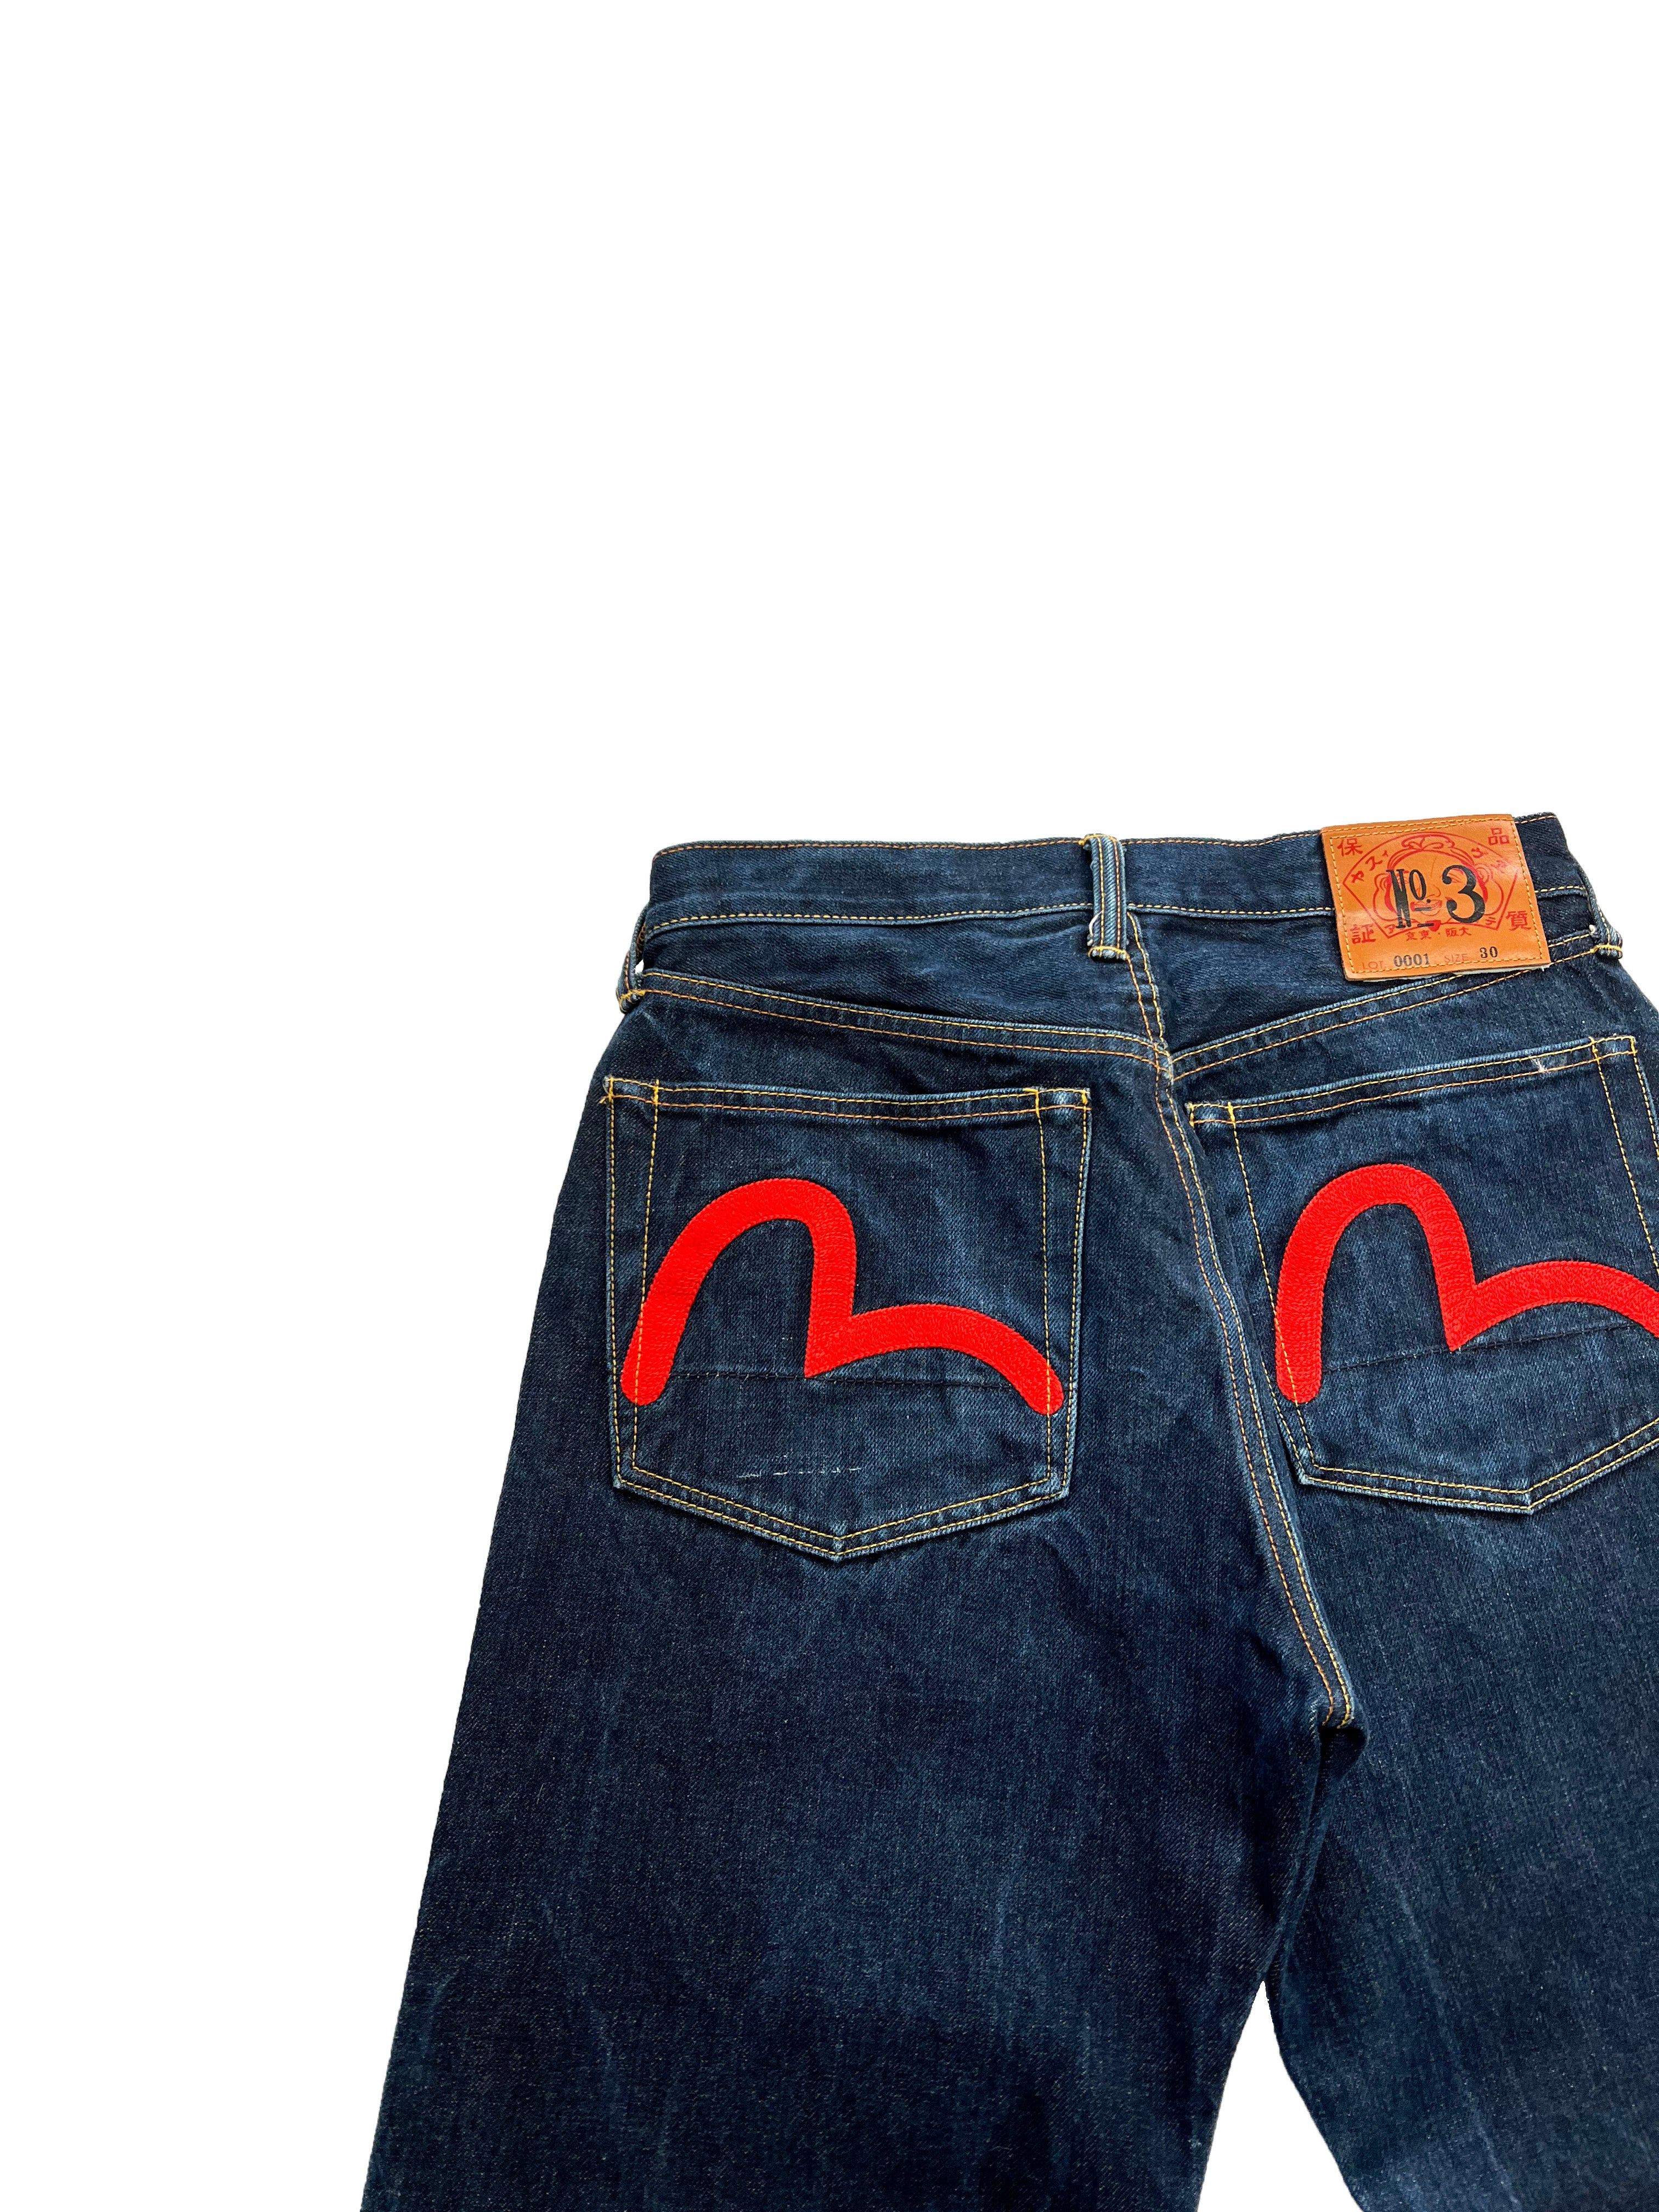 Evisu Denim Red Gull Jeans 2001